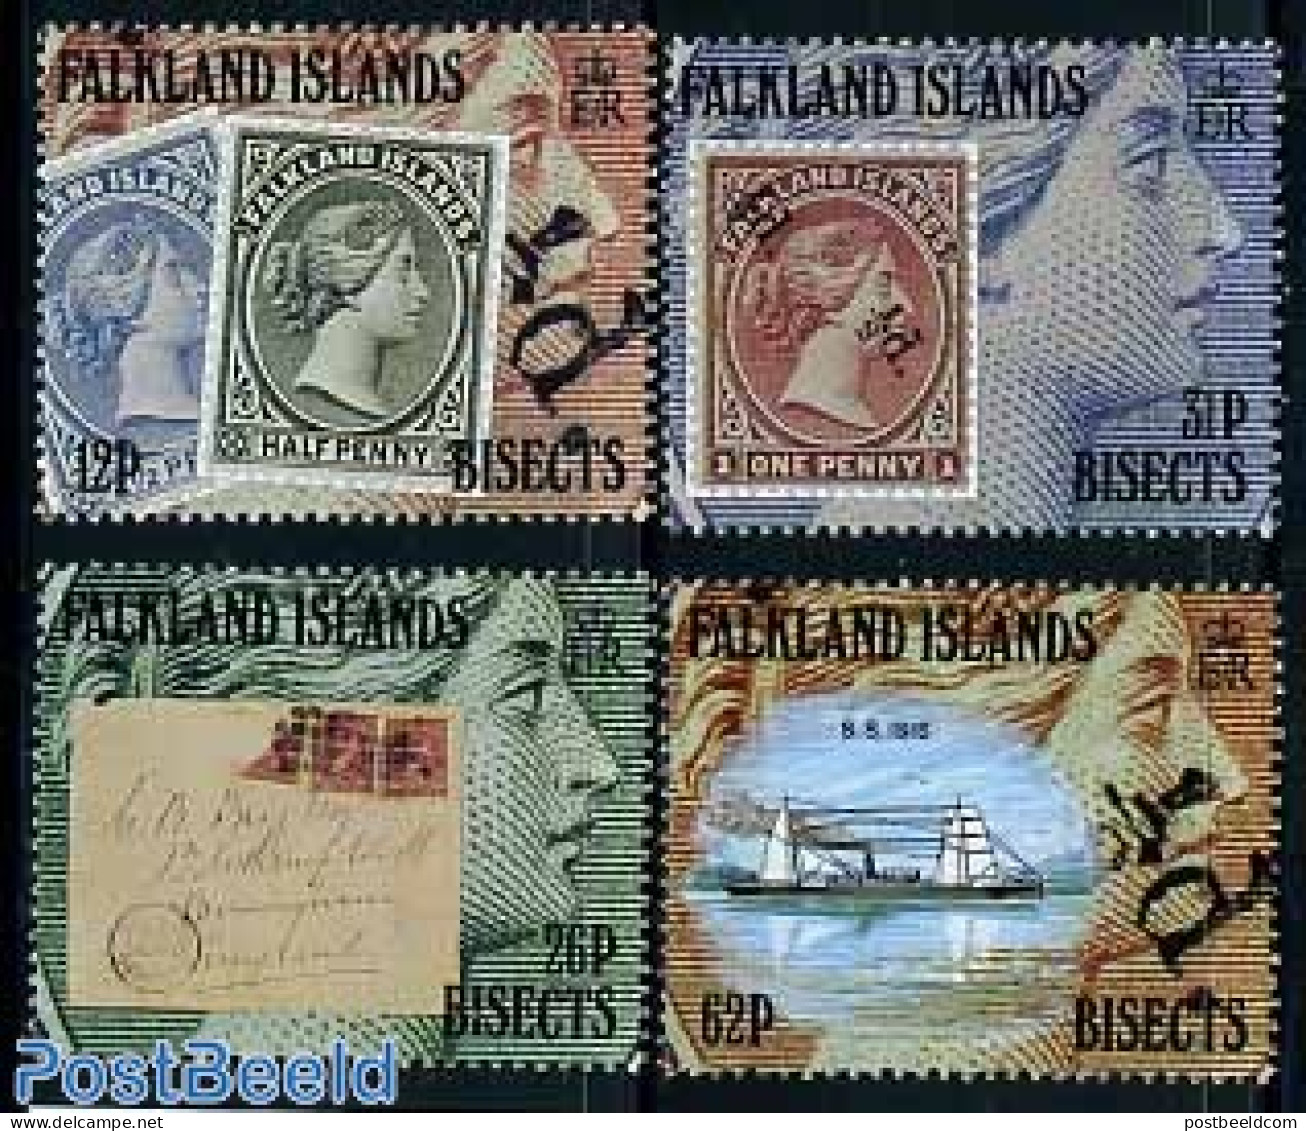 Falkland Islands 1991 Issue Of 1891 4v, Mint NH, Transport - Stamps On Stamps - Ships And Boats - Briefmarken Auf Briefmarken